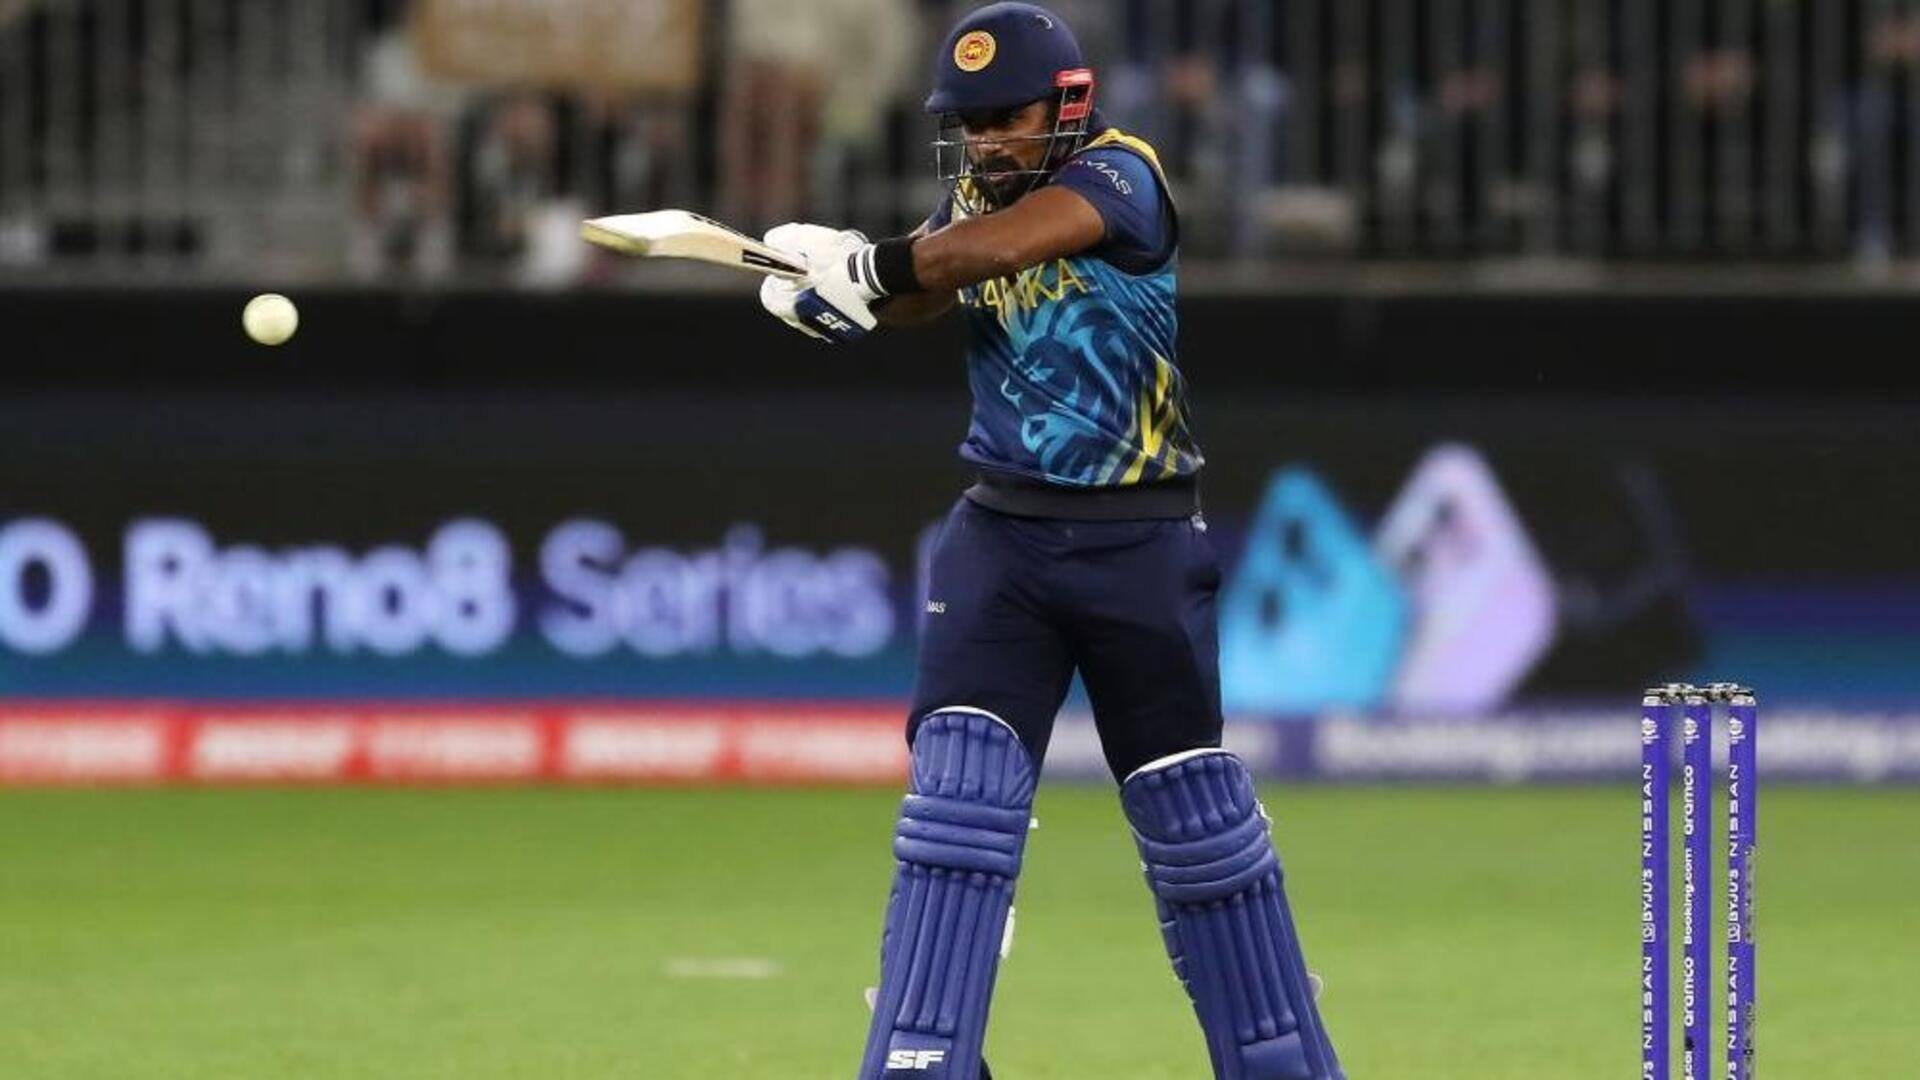 टी-20 क्रिकेट: चरिथ असलंका ने श्रीलंका की सरजमीं पर लगाया पहला अर्धशतक, जानिए उनके आंकड़े